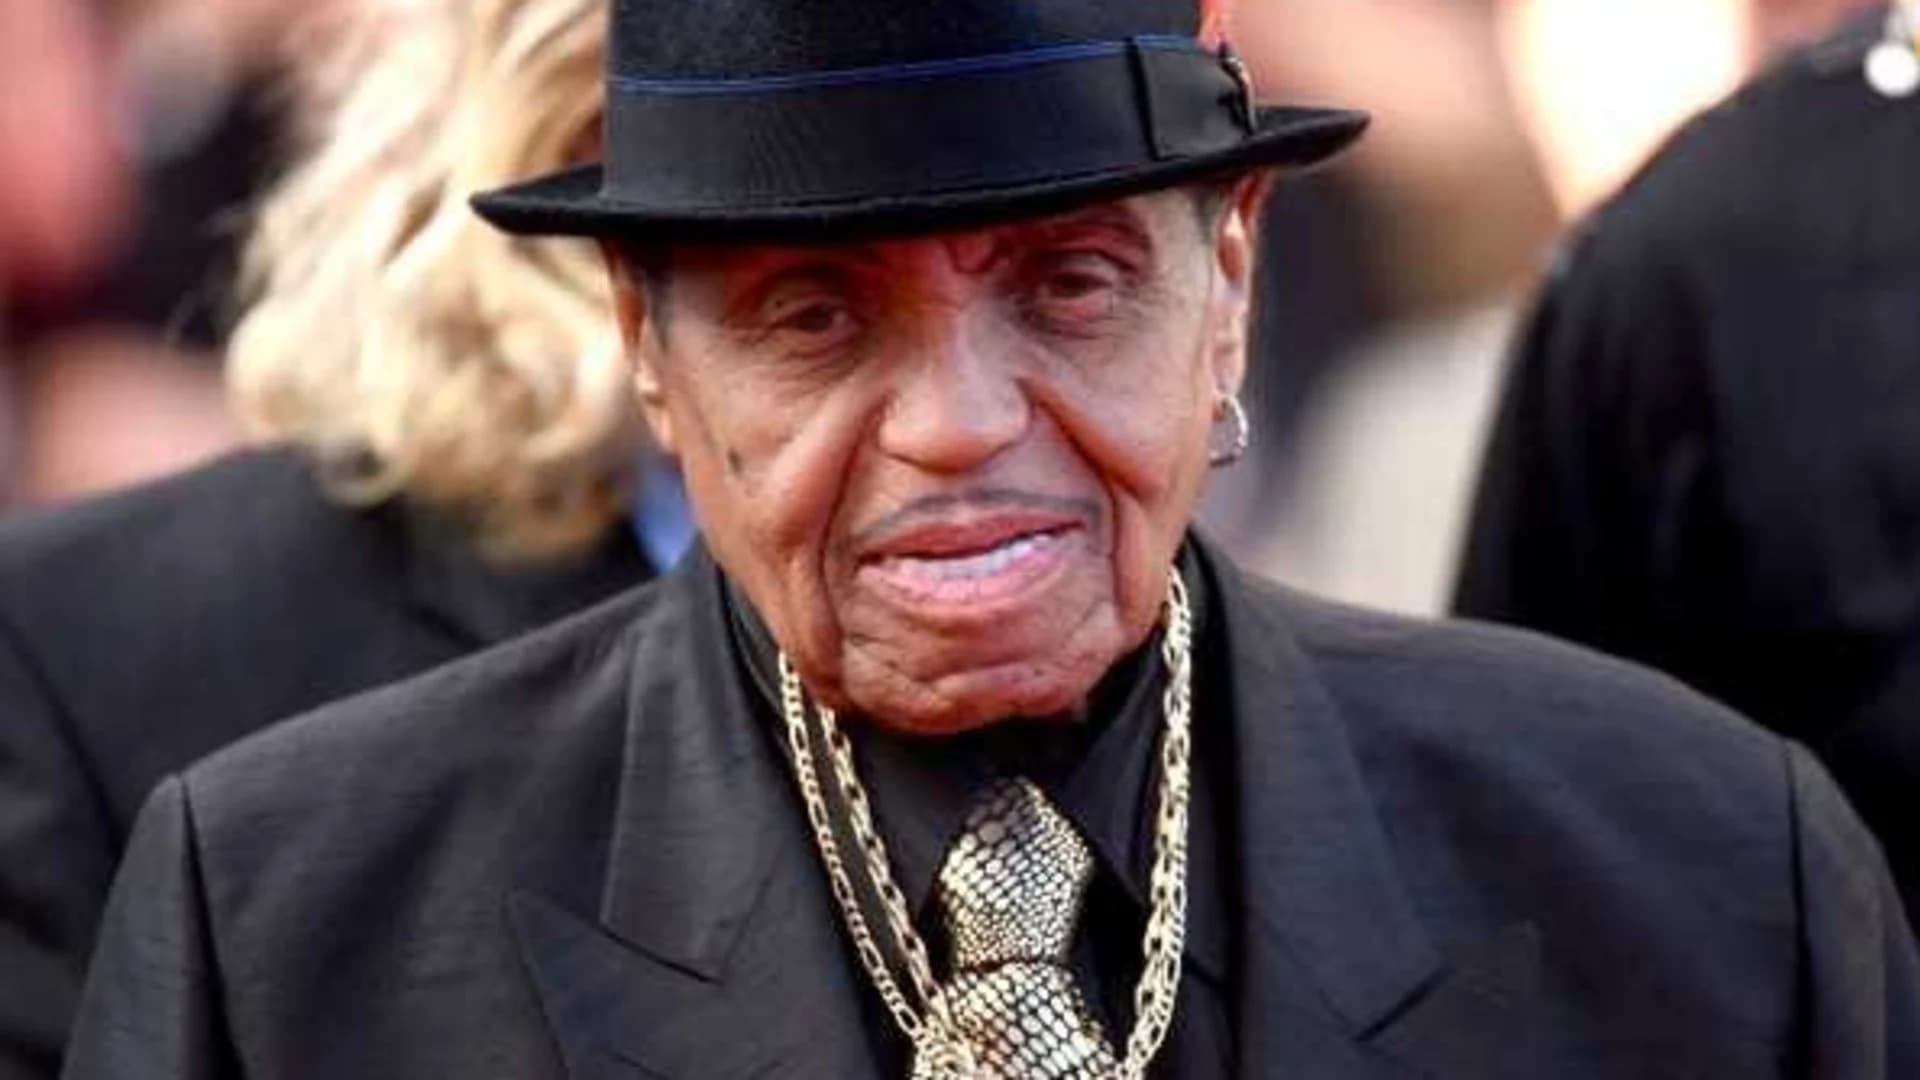 Joe Jackson, patriarch of musical Jackson family, dies at 89